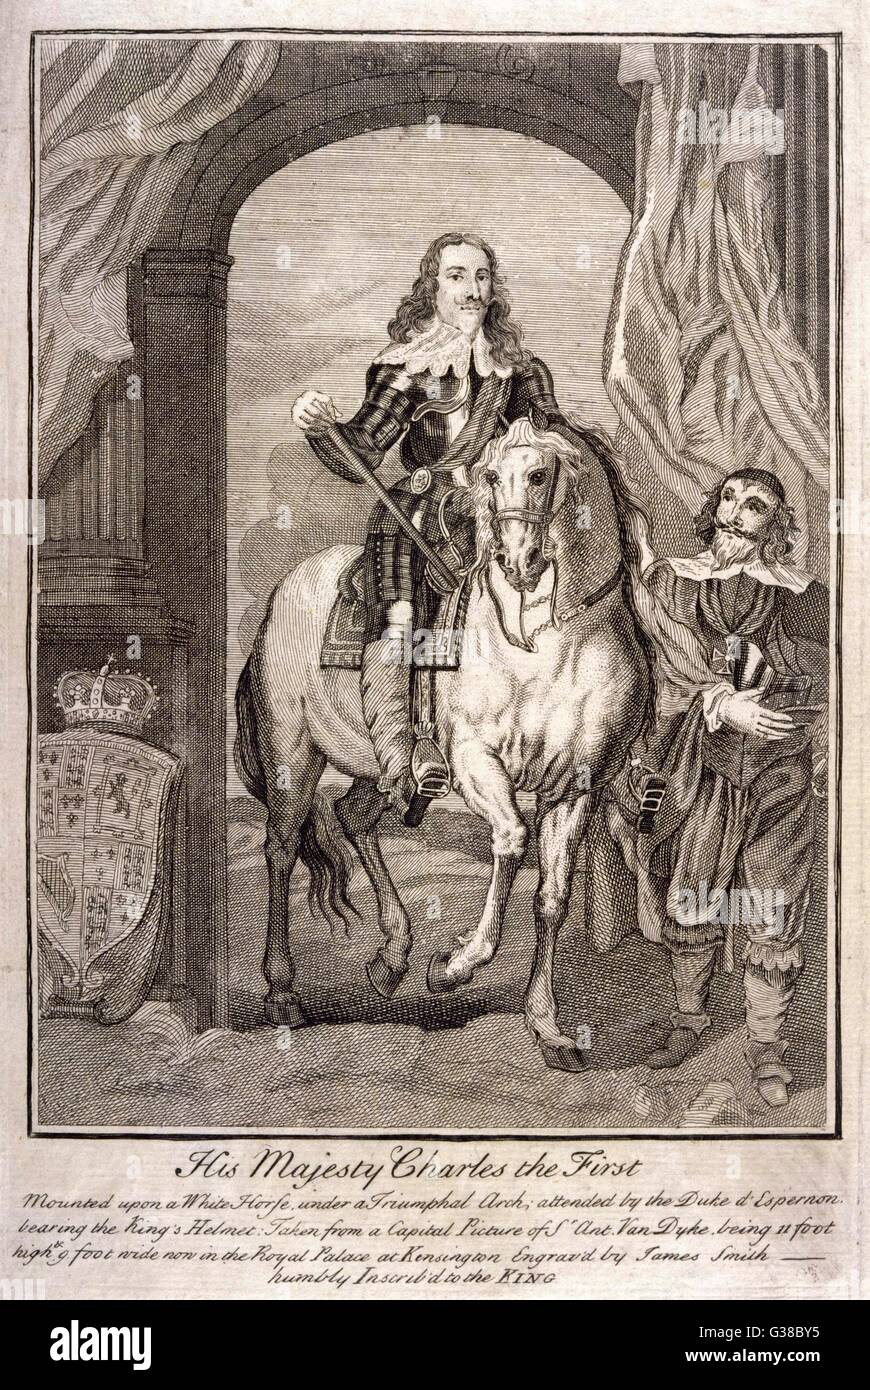 Carlos I de Inglaterra montado en un caballo blanco bajo un arco de triunfo, a la que asistieron el Duque d'ESPERNON teniendo el casco del rey Fecha: 1600 - 1649 Foto de stock